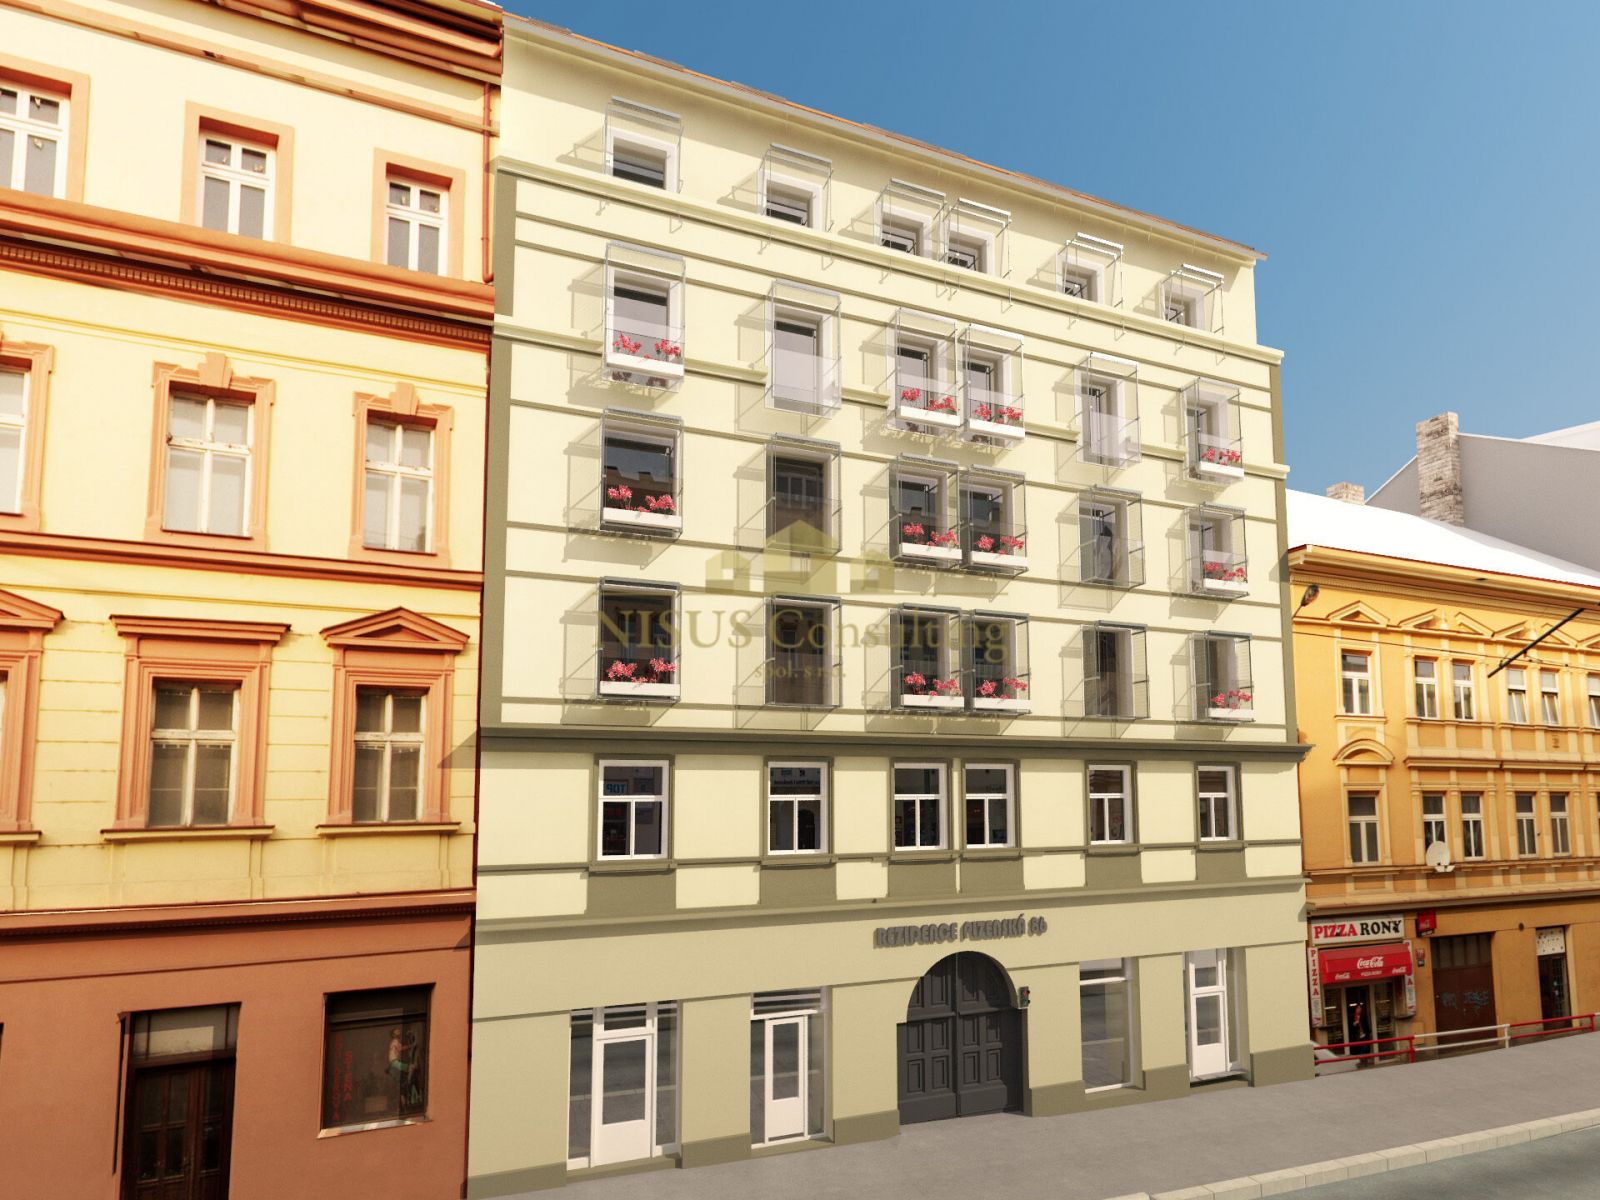 Rezidence Košíře, prodej bytu 2+kk, 53 m2, balkón, parkování, sklep, Praha 5 - Košíře